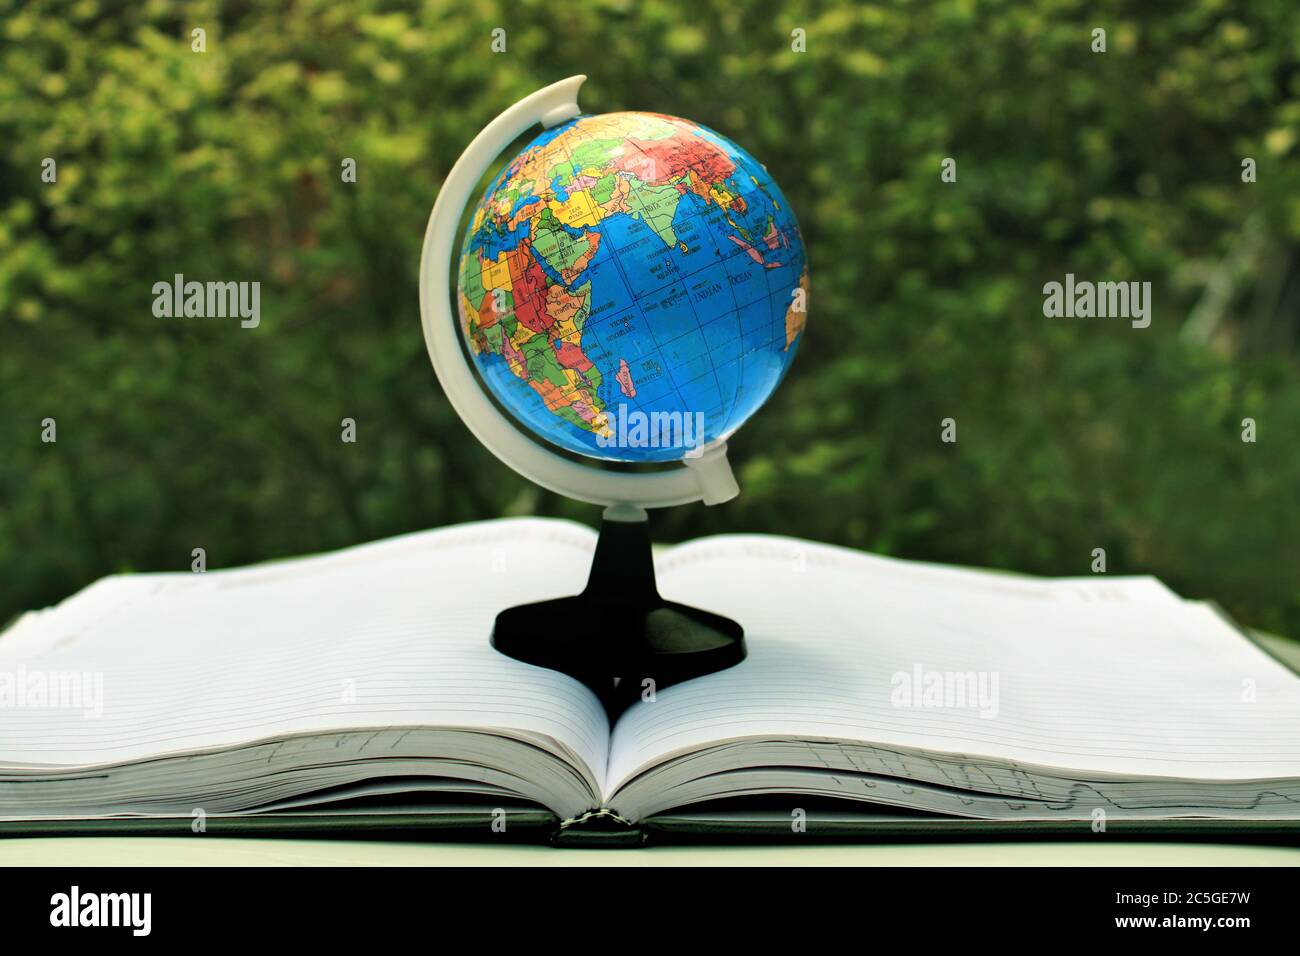 La Terre verte sur la page du journal. Globe terrestre avec feuilles vertes isolées sur fond de nature. Monde scolaire dans la nature. Banque D'Images